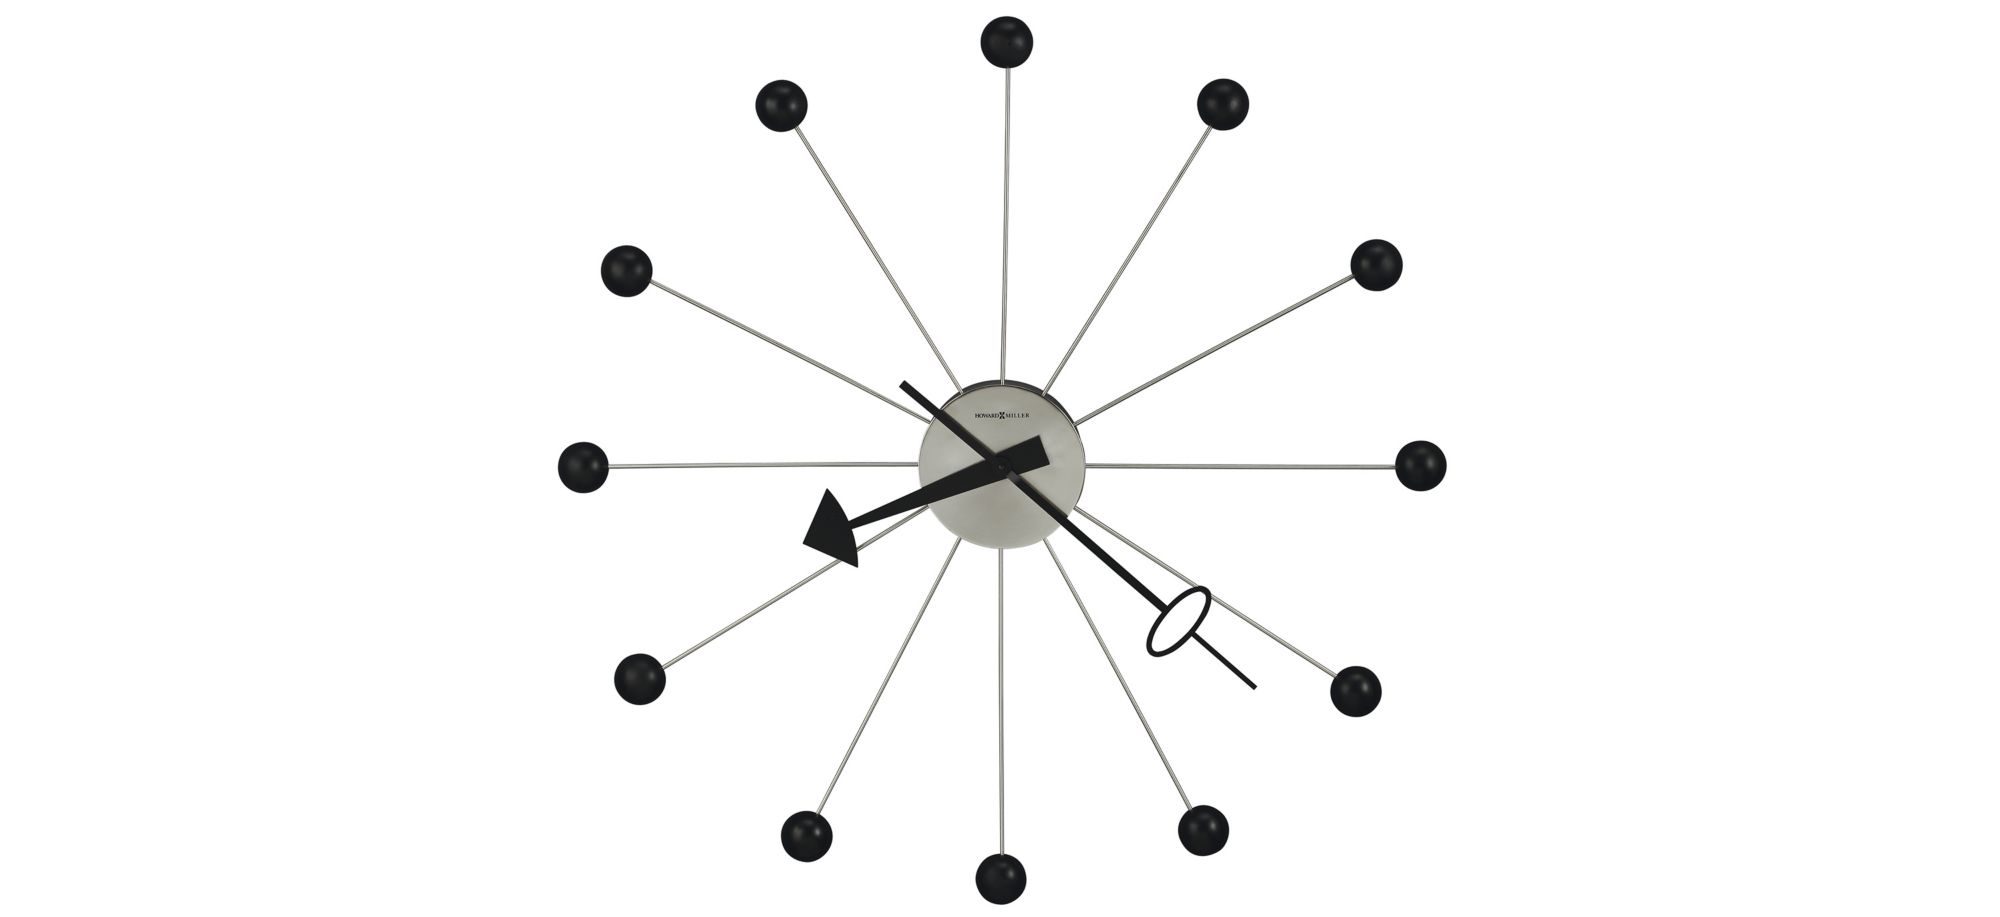 Ball II Wall Clock in Black by Howard Miller